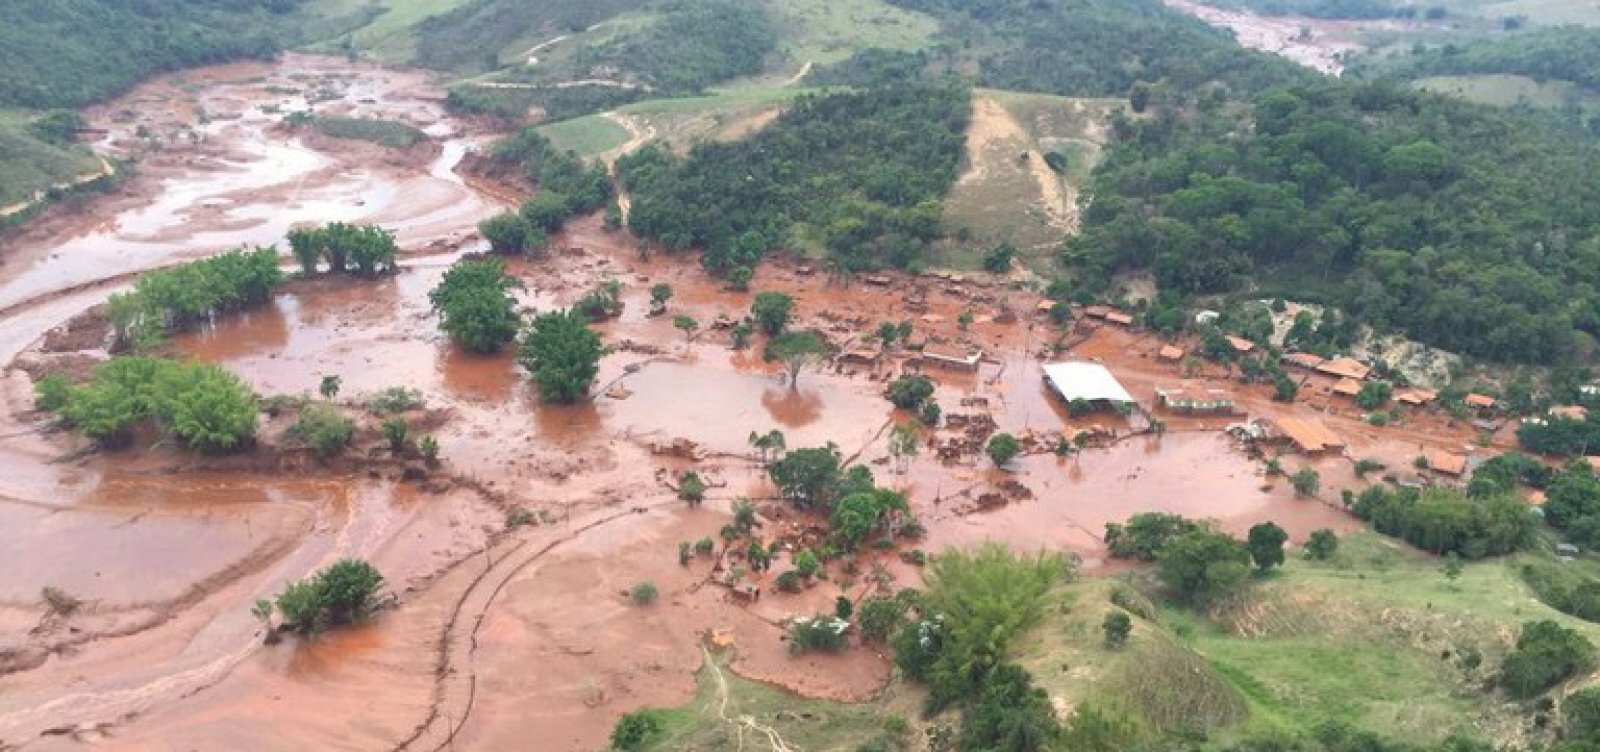 Baianos atingidos pela barragem de Mariana podem participar em novo processo contra Vale e Samarco